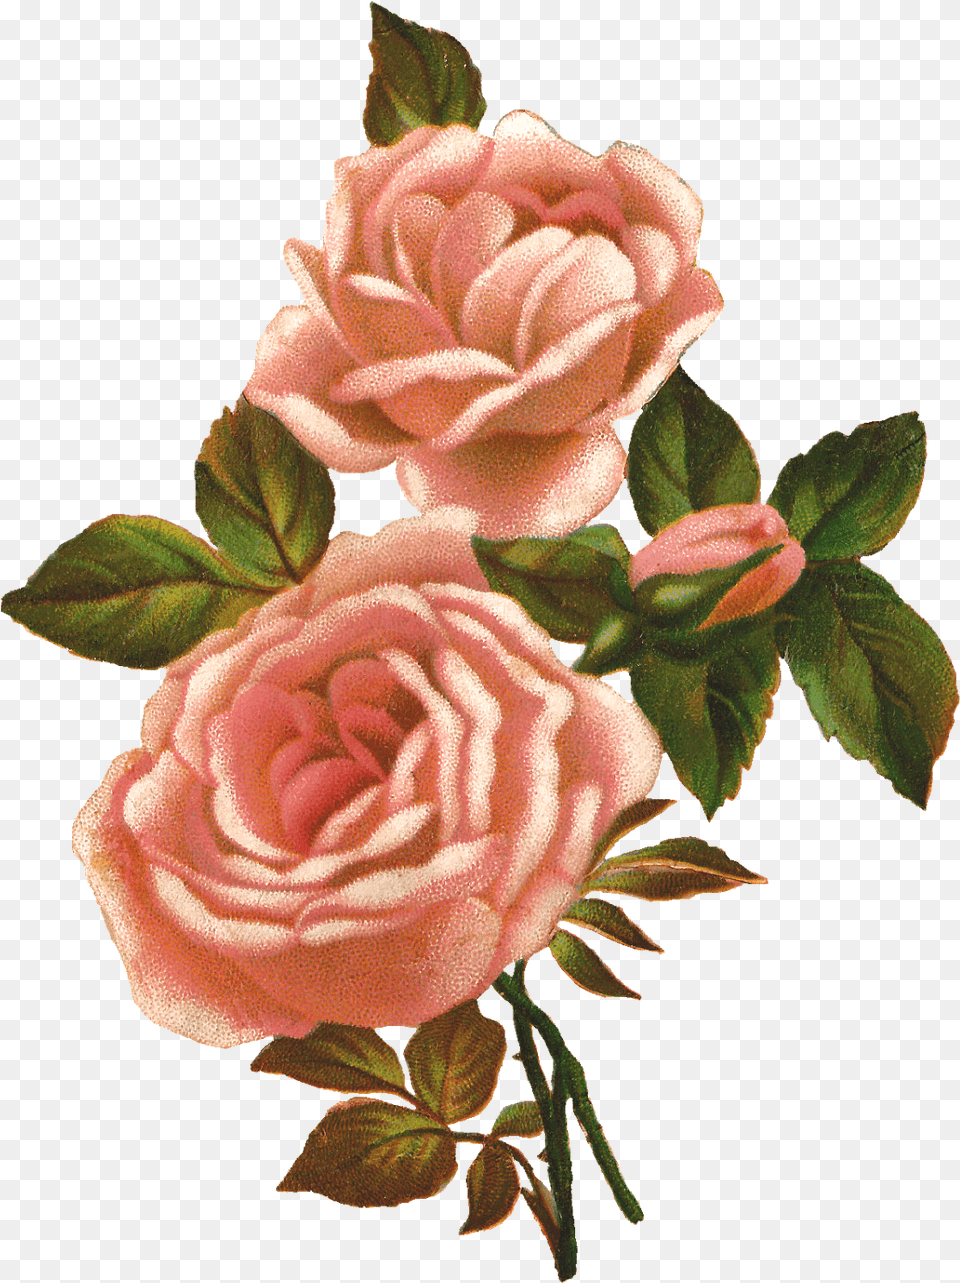 Vintage Roses Transparent Clipart Vintage Flowers Transparent Background, Flower, Plant, Rose Free Png Download